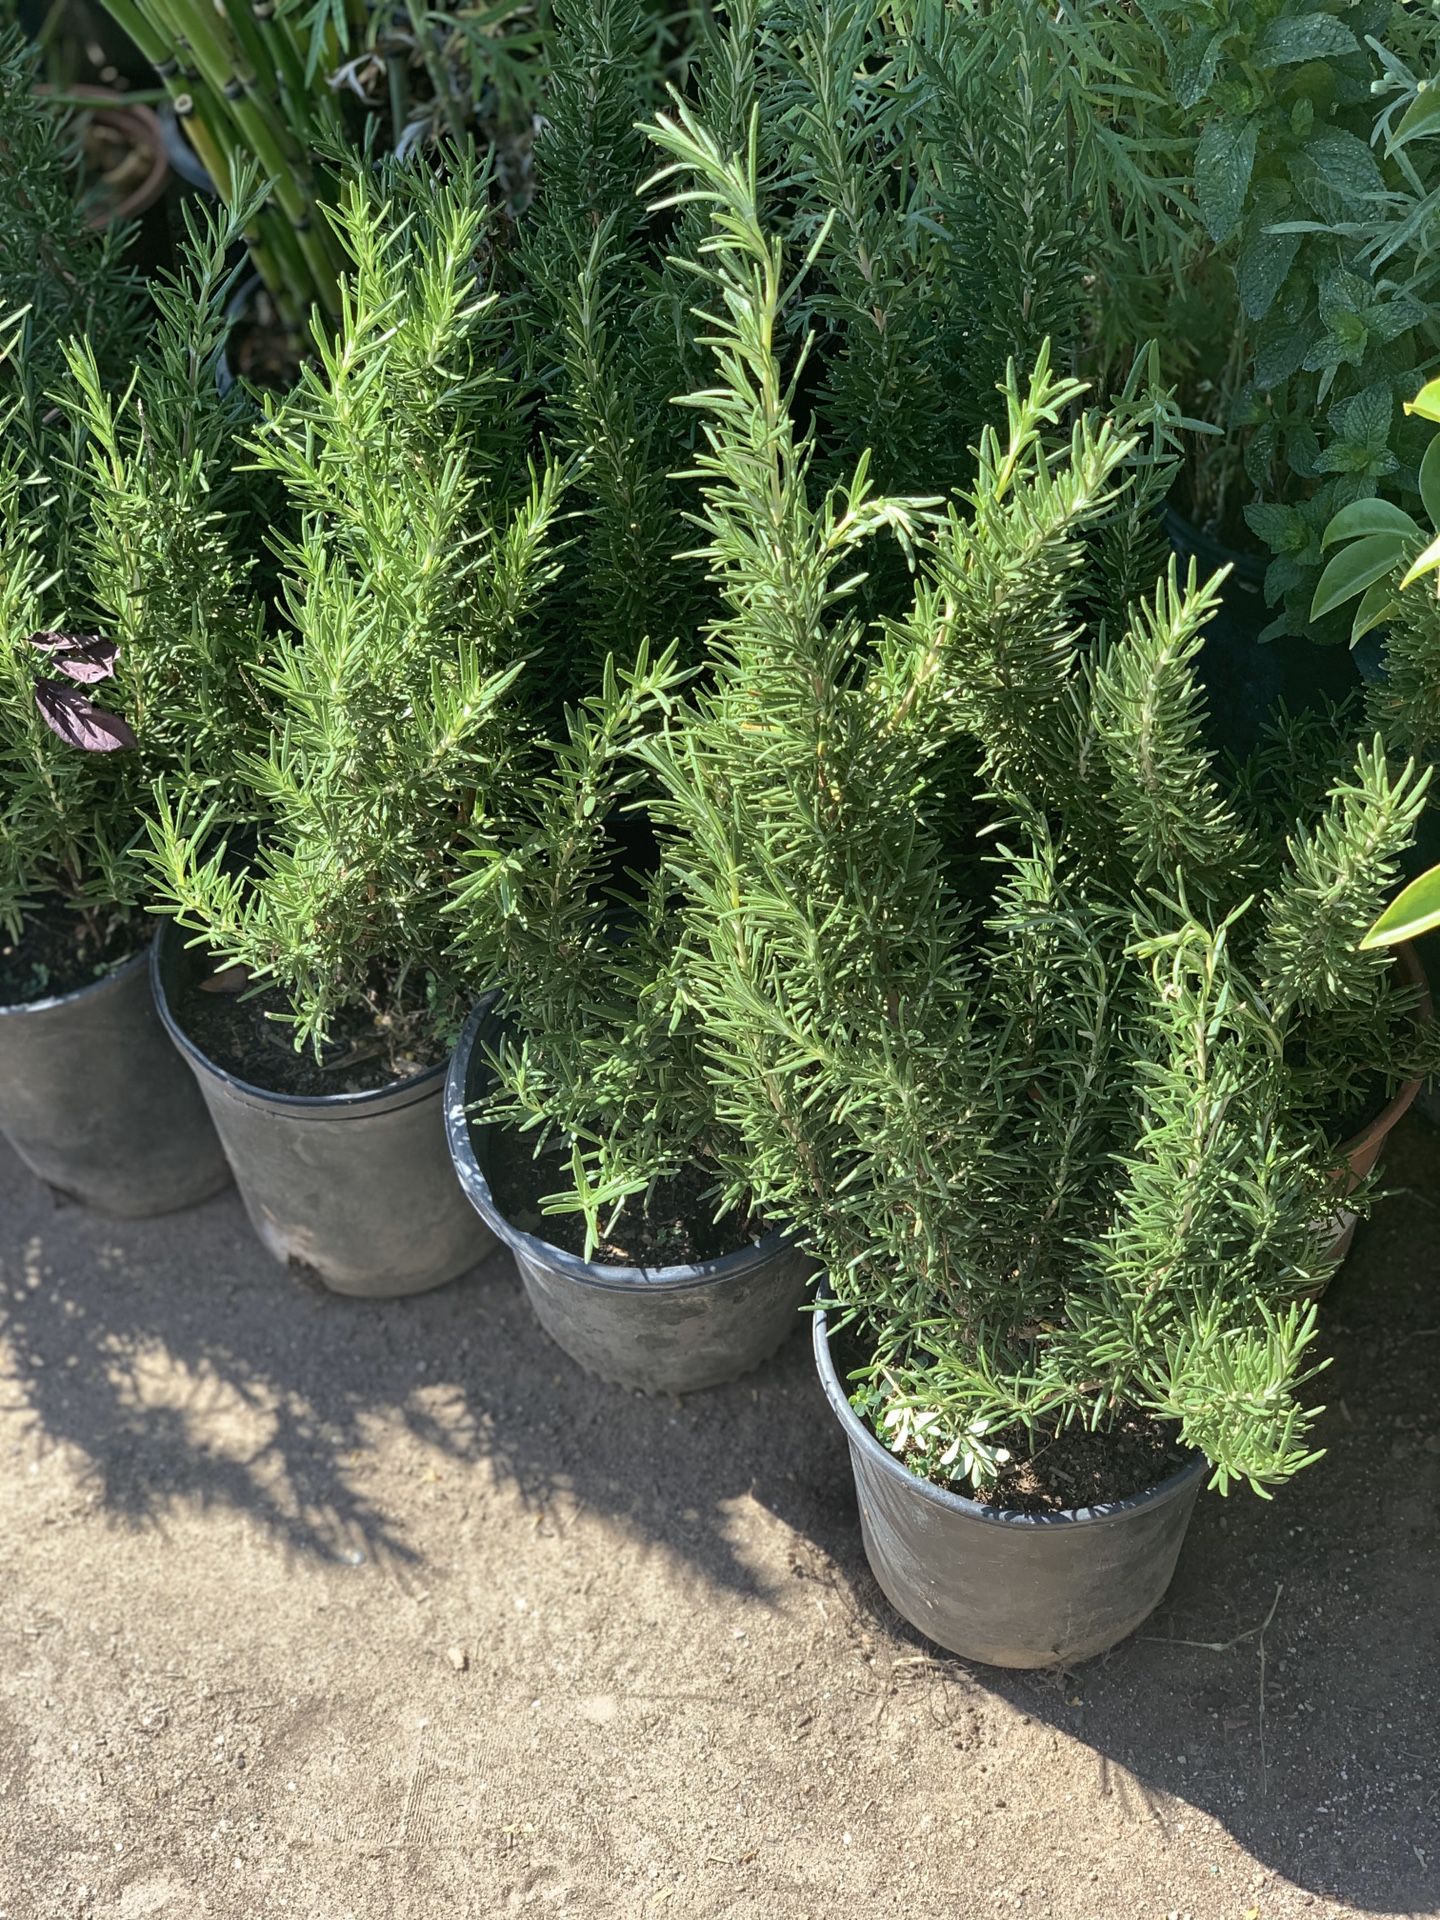 Rosemary’s plants